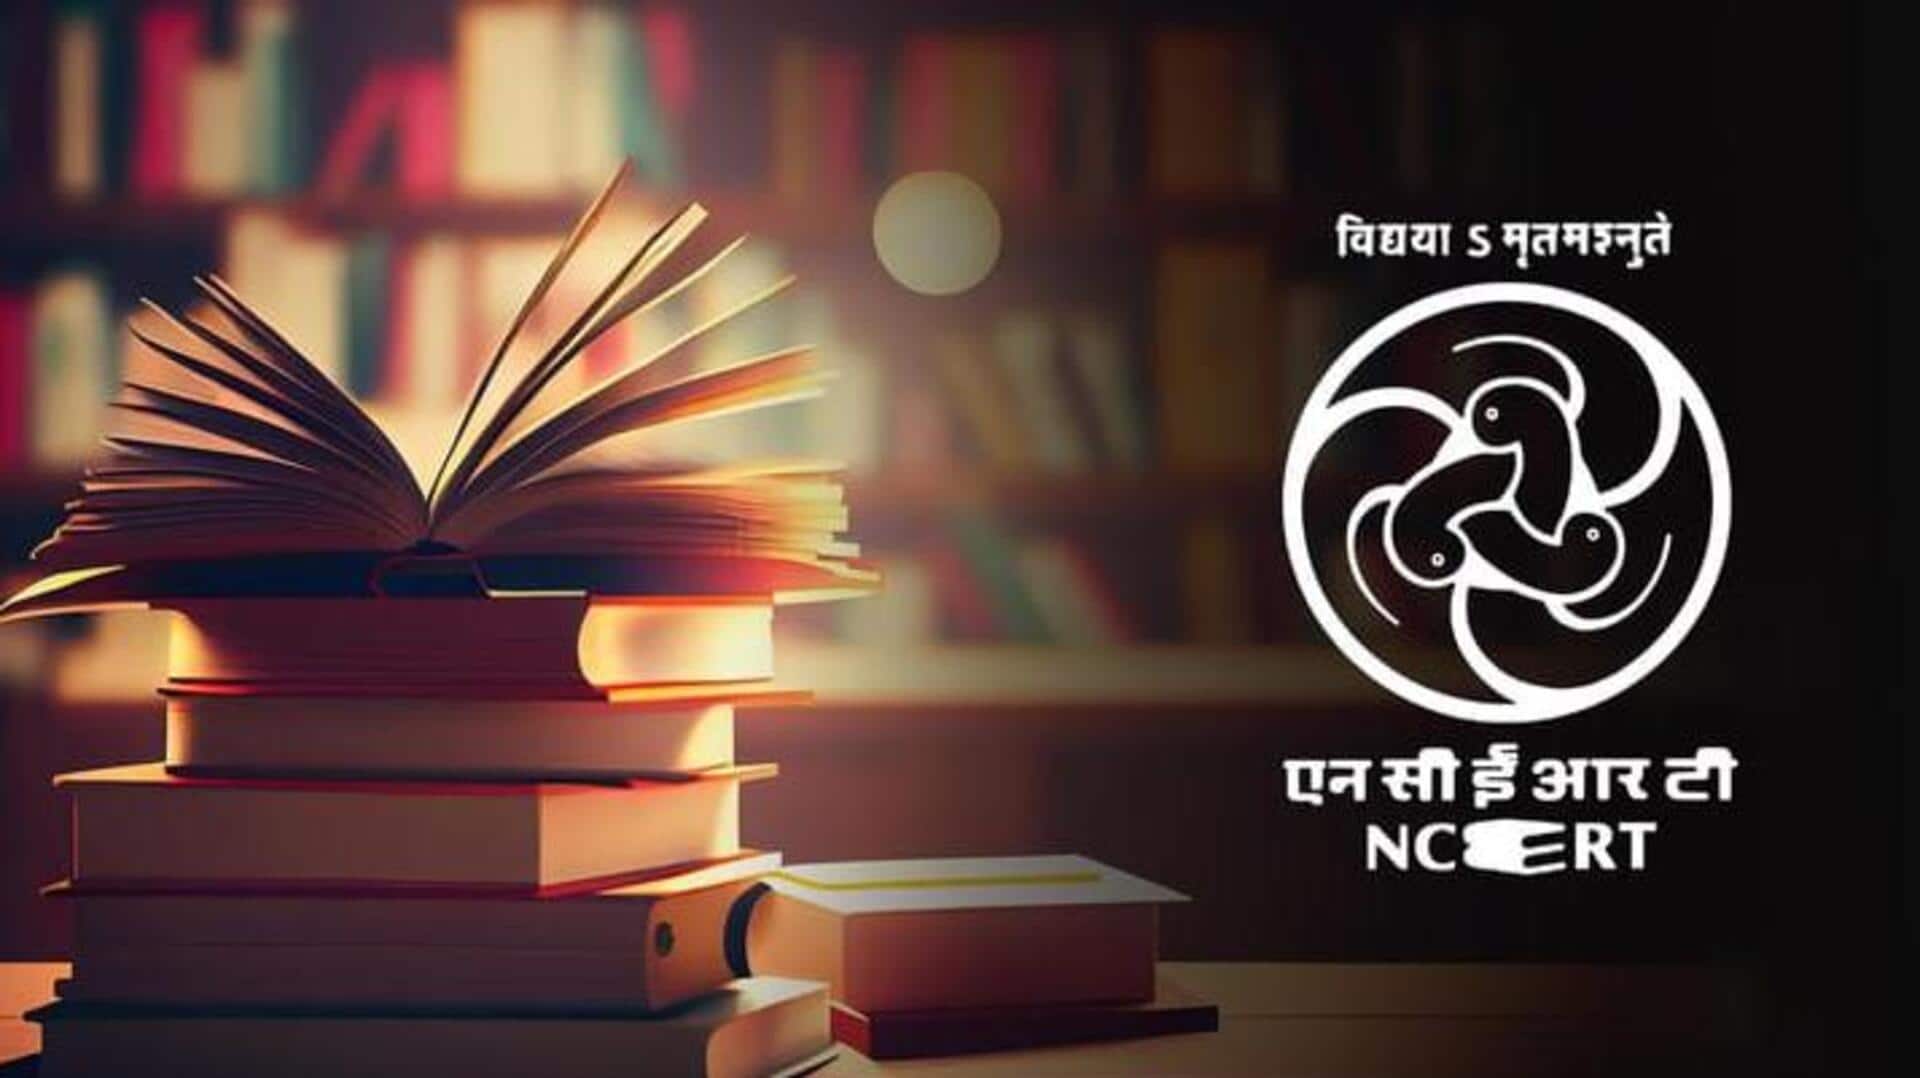 NCERT किताबों का हिस्सा बन सकती हैं रामायण और महाभारत, उच्च स्तरीय समिति ने दिया सुझाव